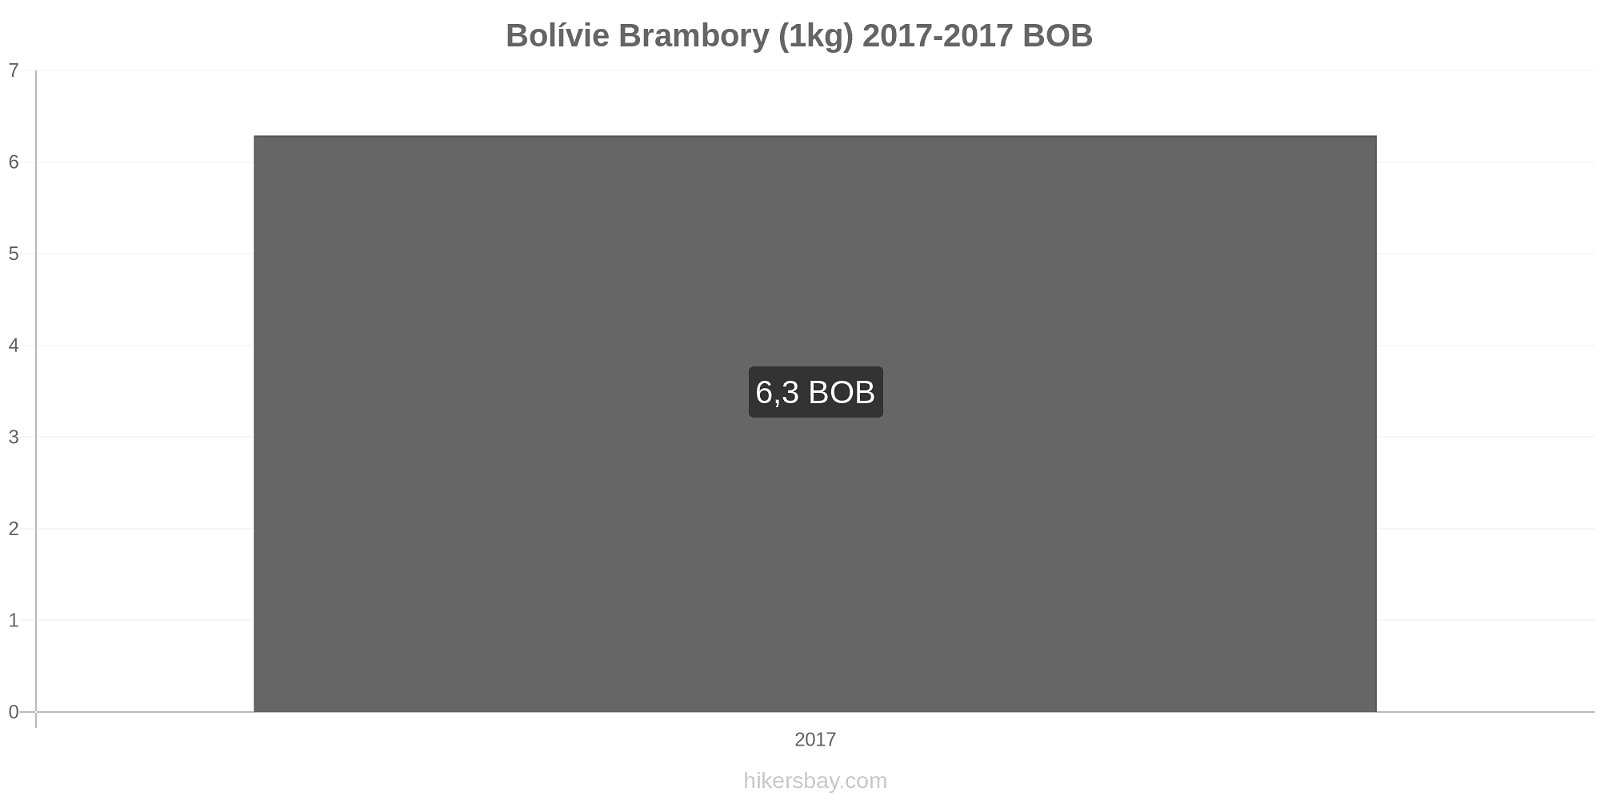 Bolívie změny cen Brambory (1kg) hikersbay.com